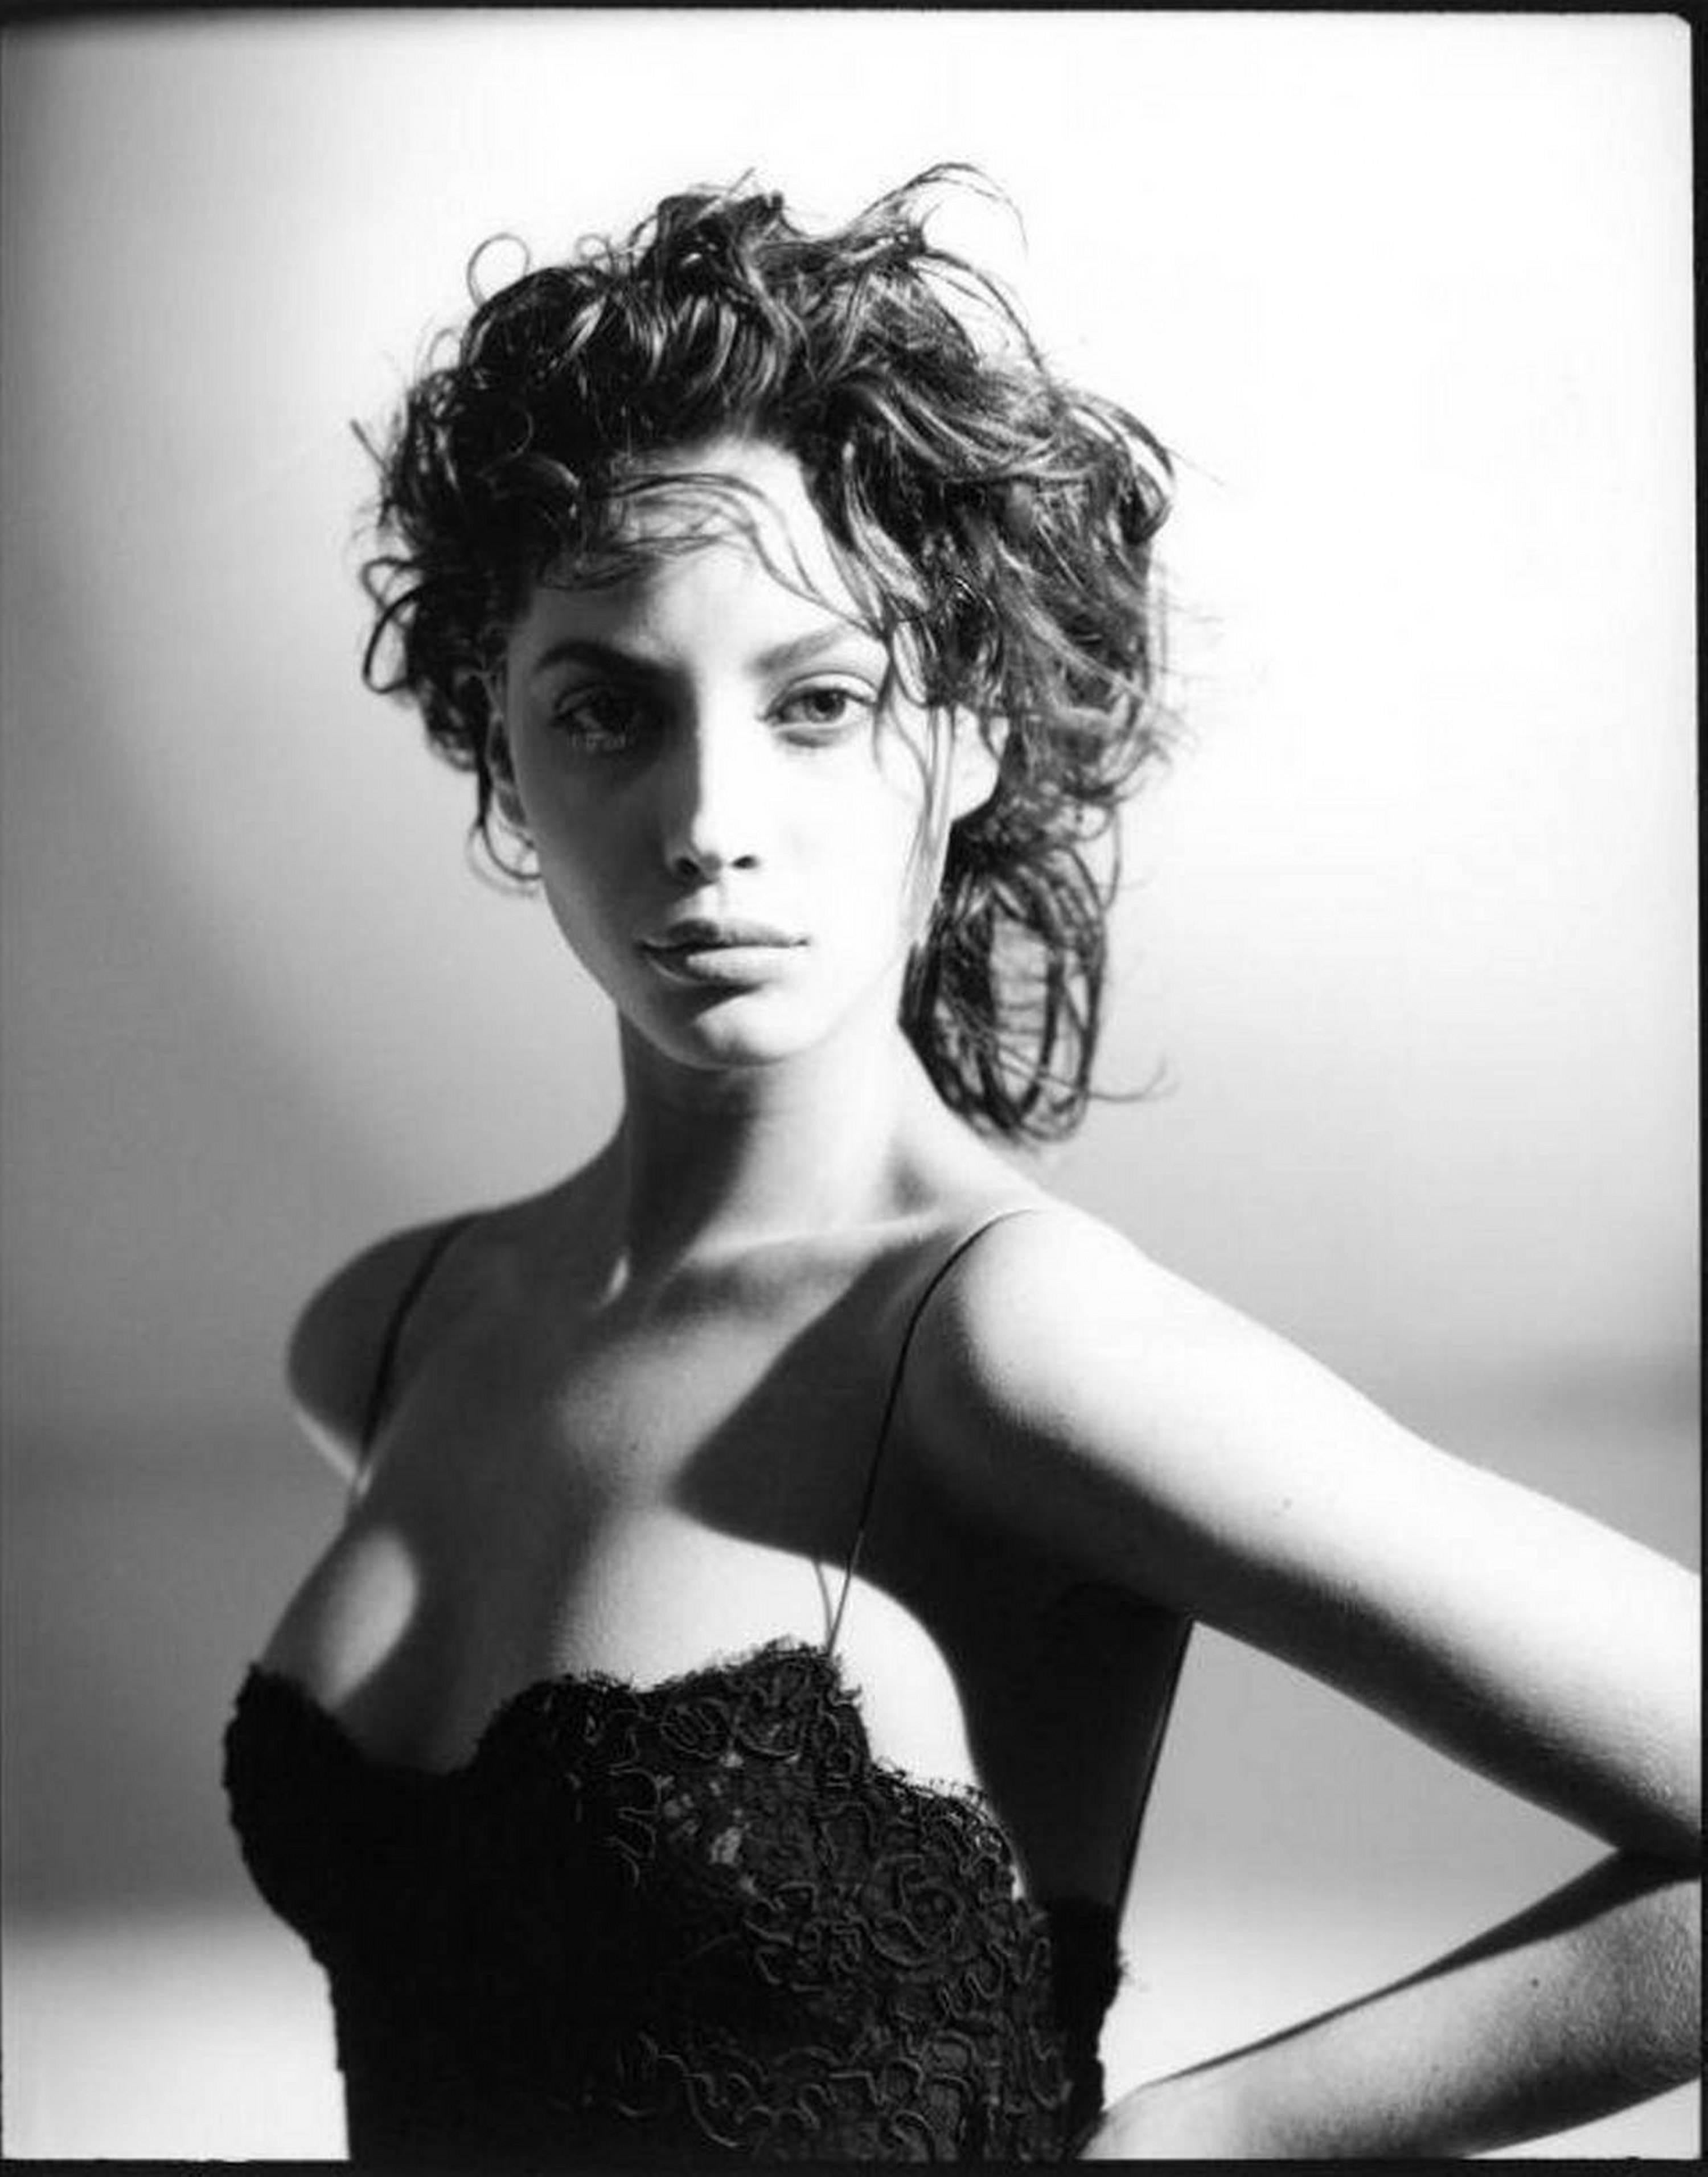 Black and White Photograph Arthur Elgort - Christy Turlington - portrait b&w en dentelle noire, photographie d'art, 1987